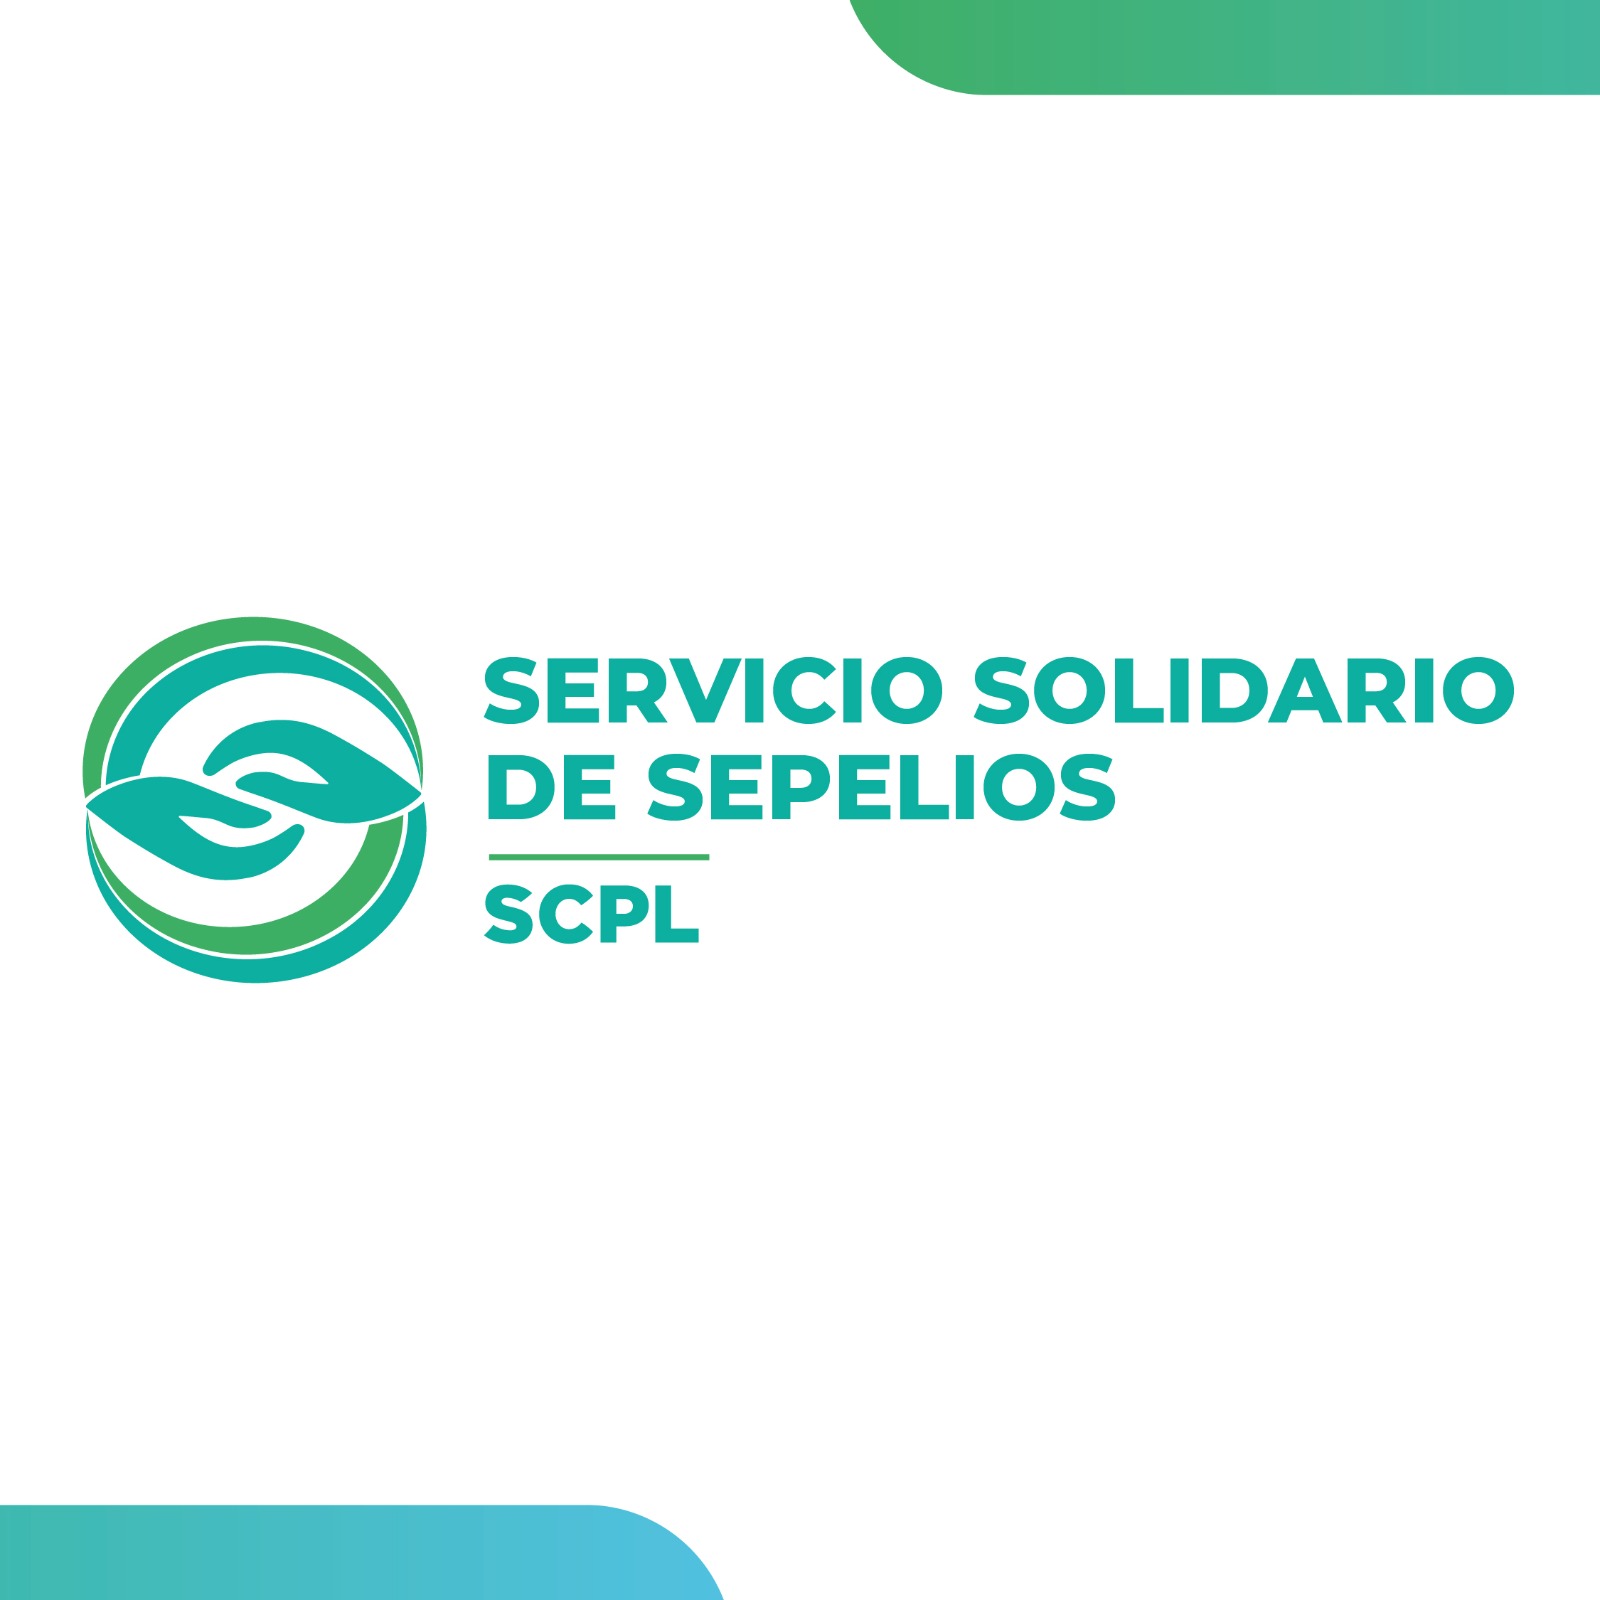 El Servicio Solidario de Sepelios cumplió 40 años y presentó su logo